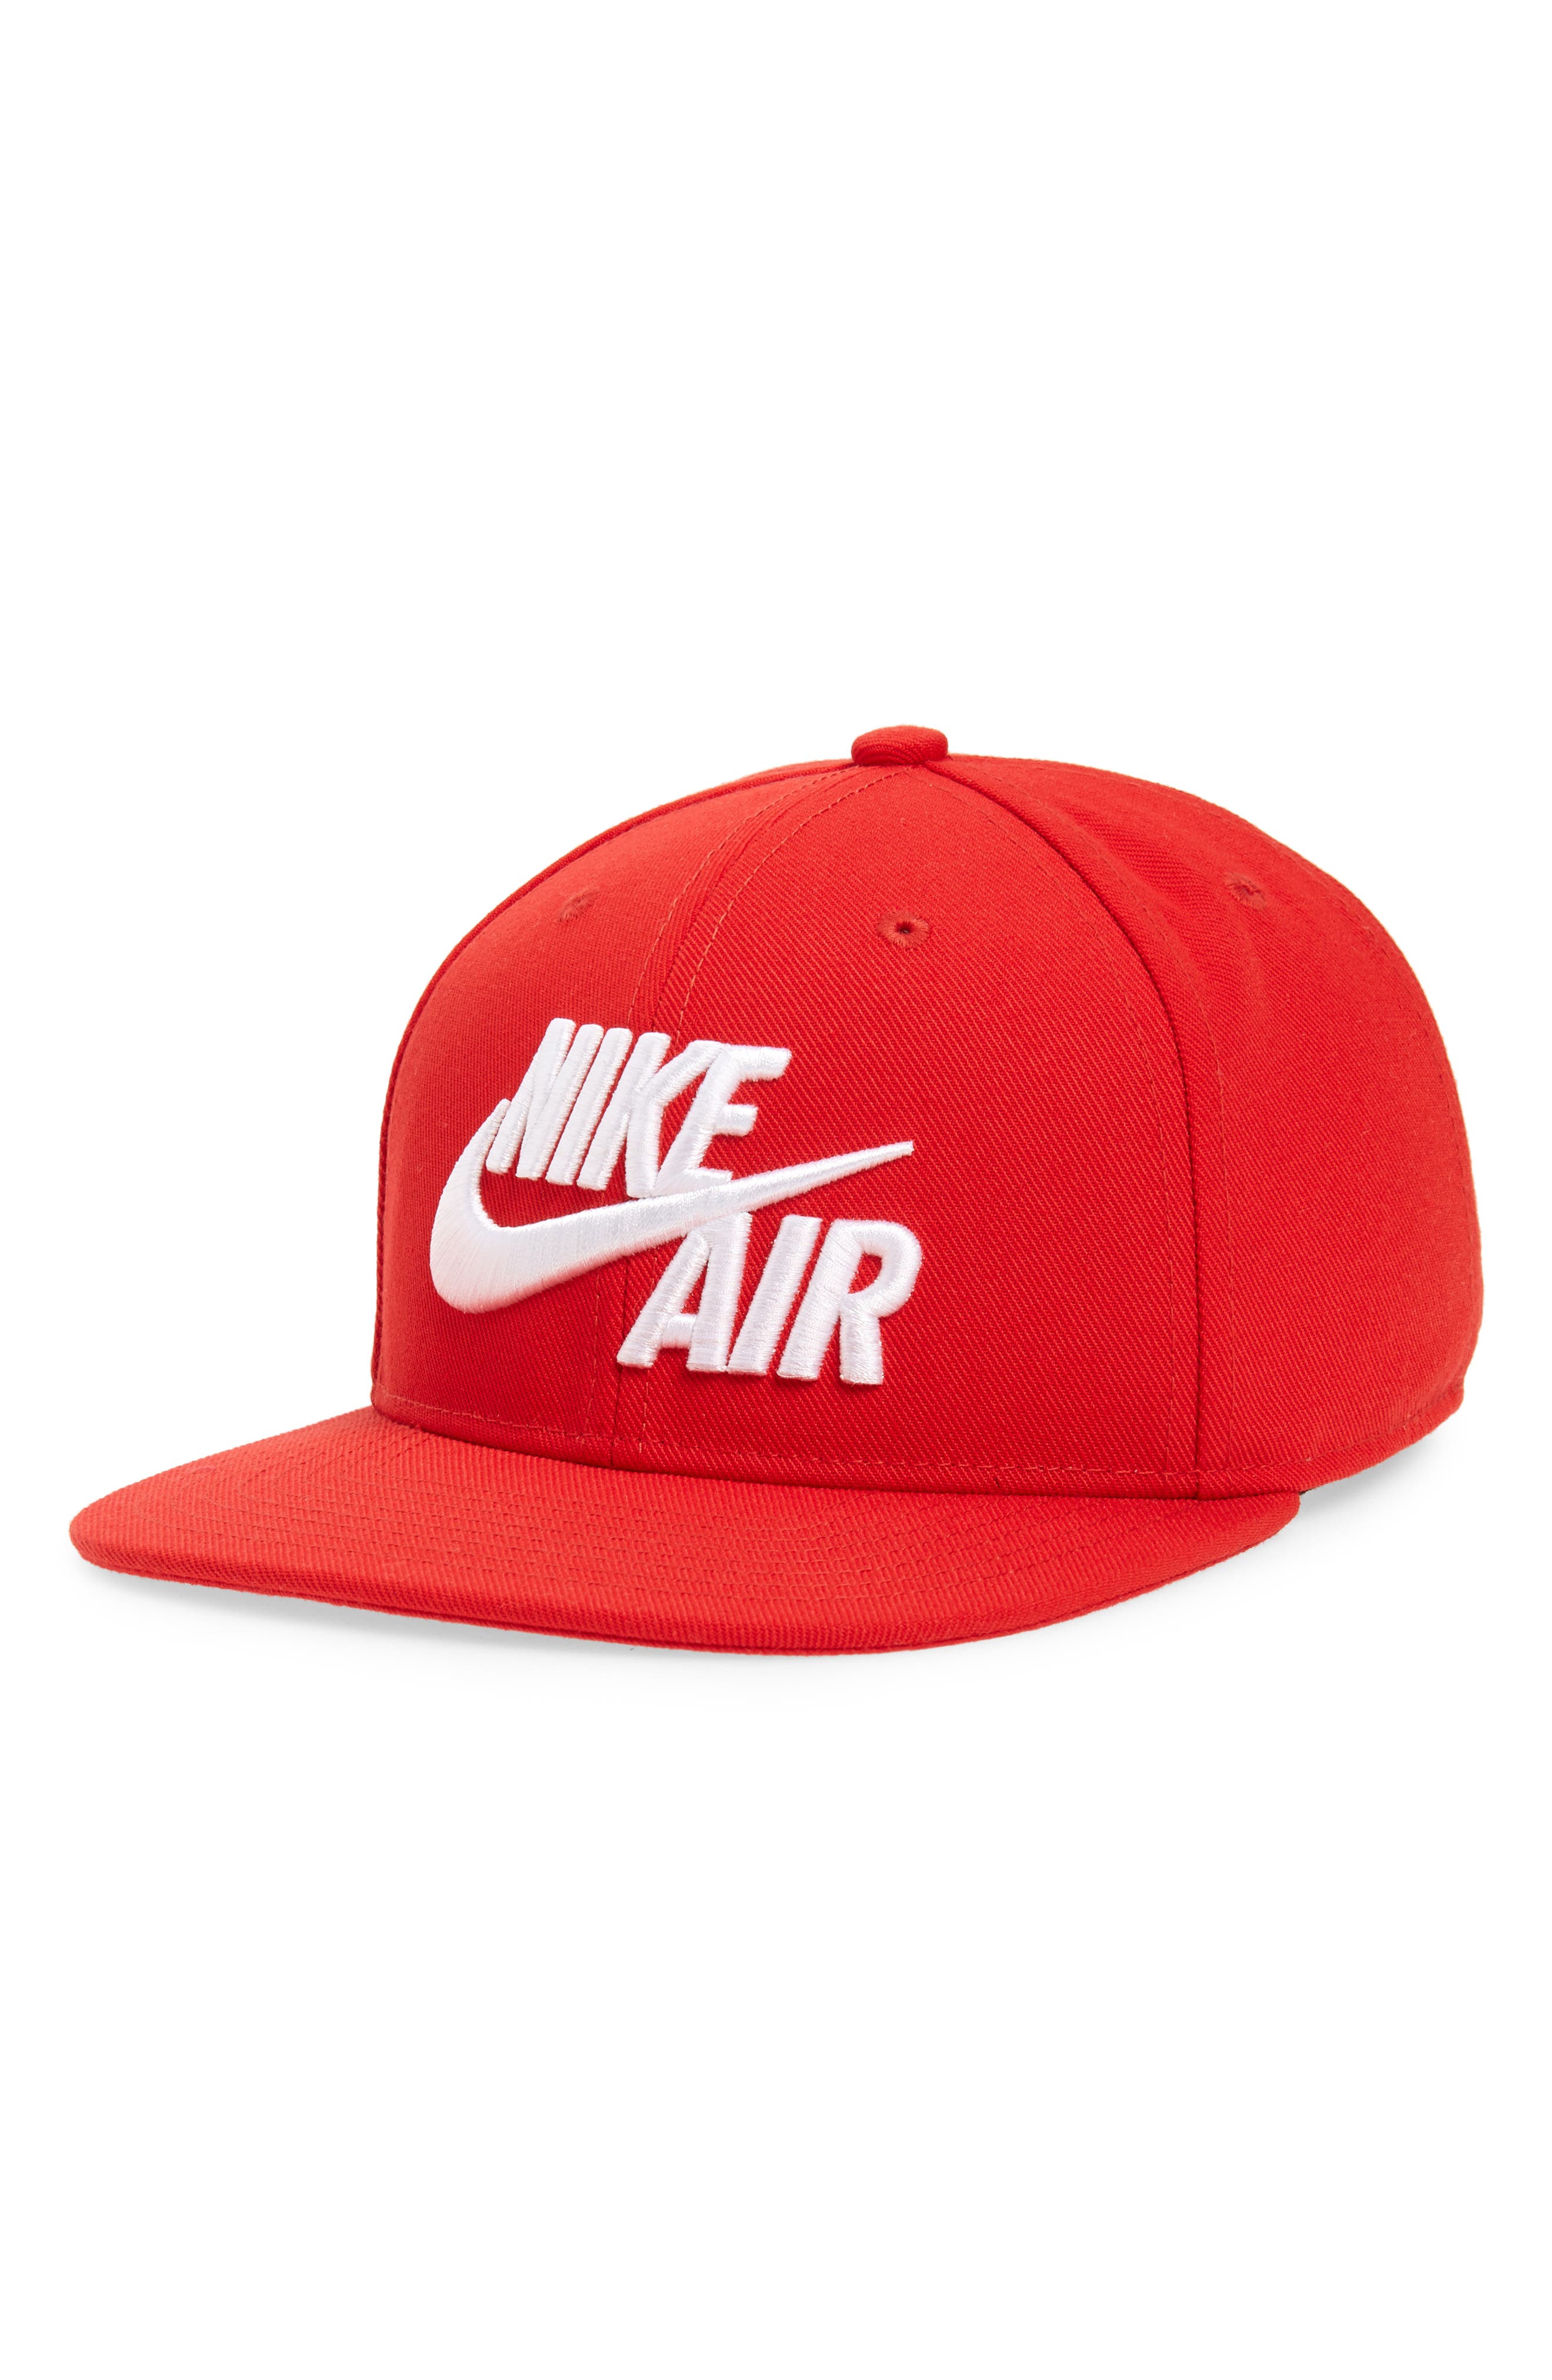 Nike Air Pro Snapback Baseball Cap 